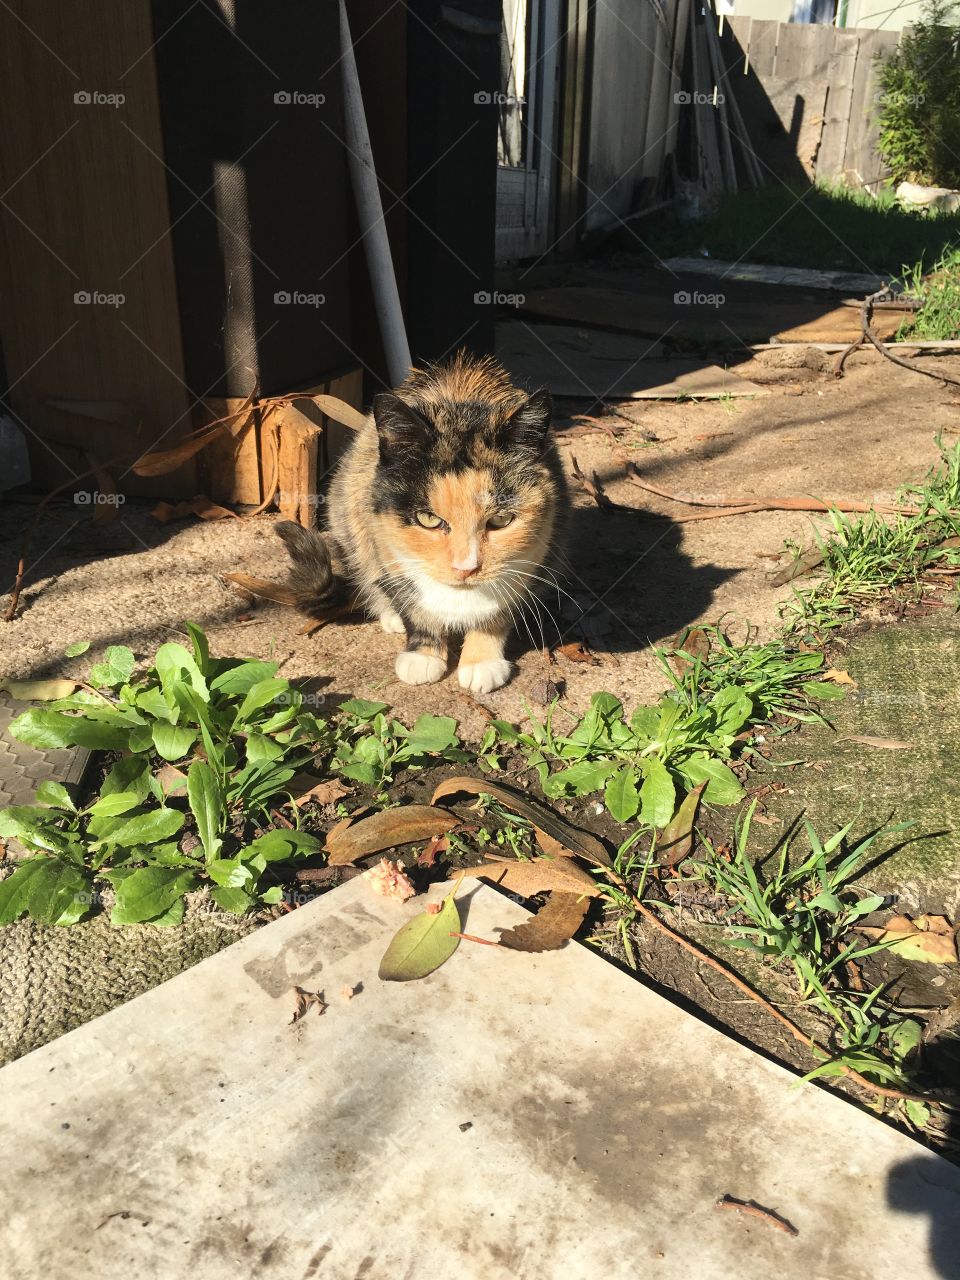 A wild cat in my backyard